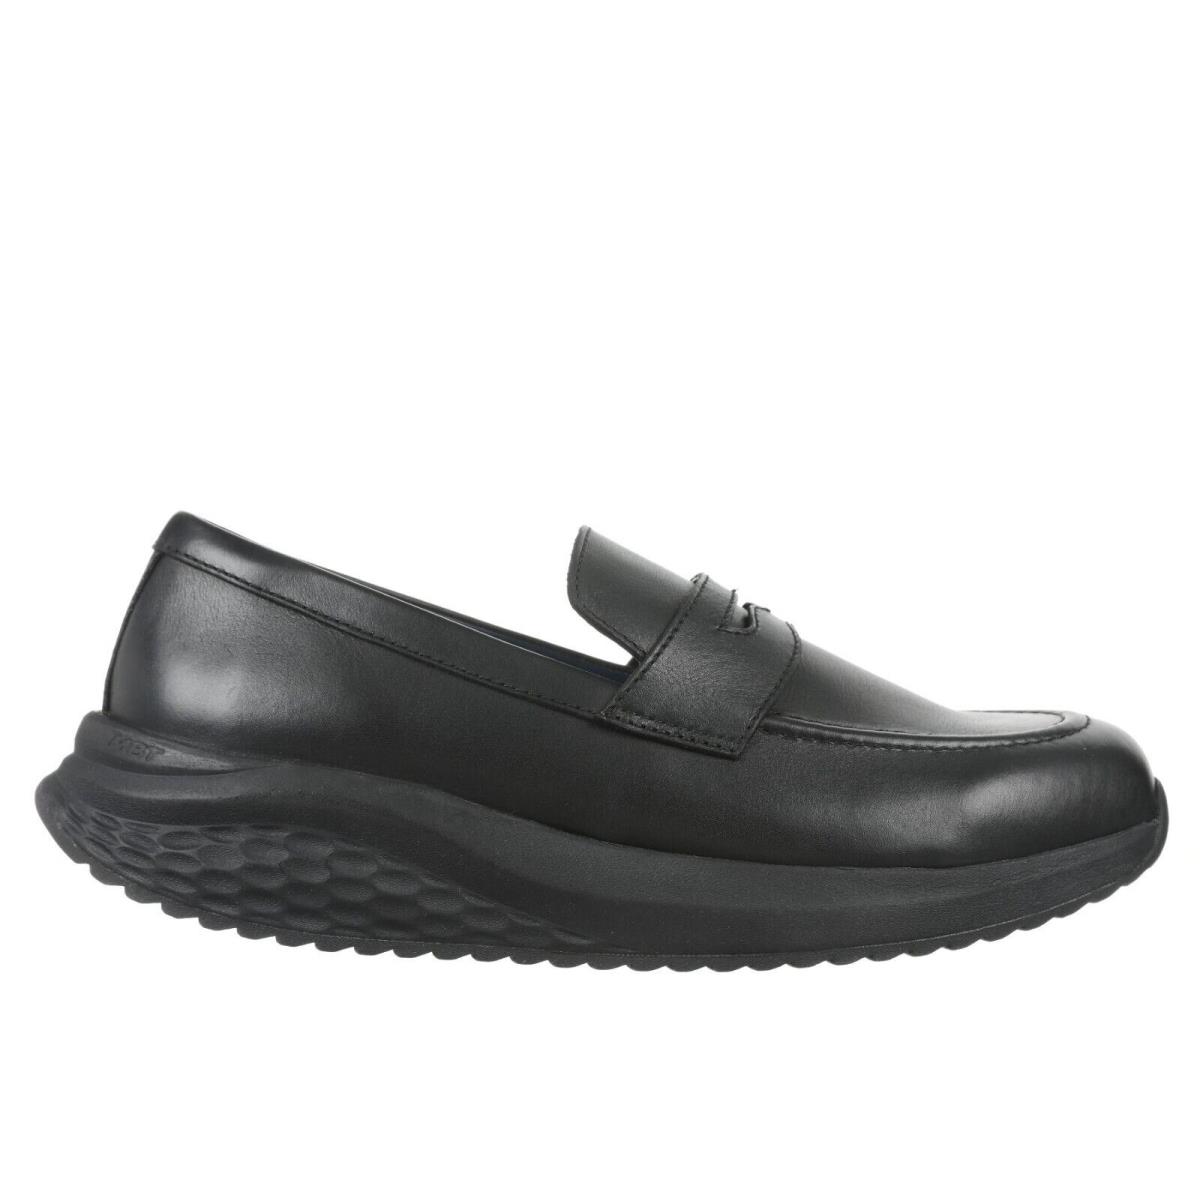 Mbt Loafer Slip-on Casual Dress Shoe Boston Vinci Lofa 3 Styles Vinci Loafer-Black Leather